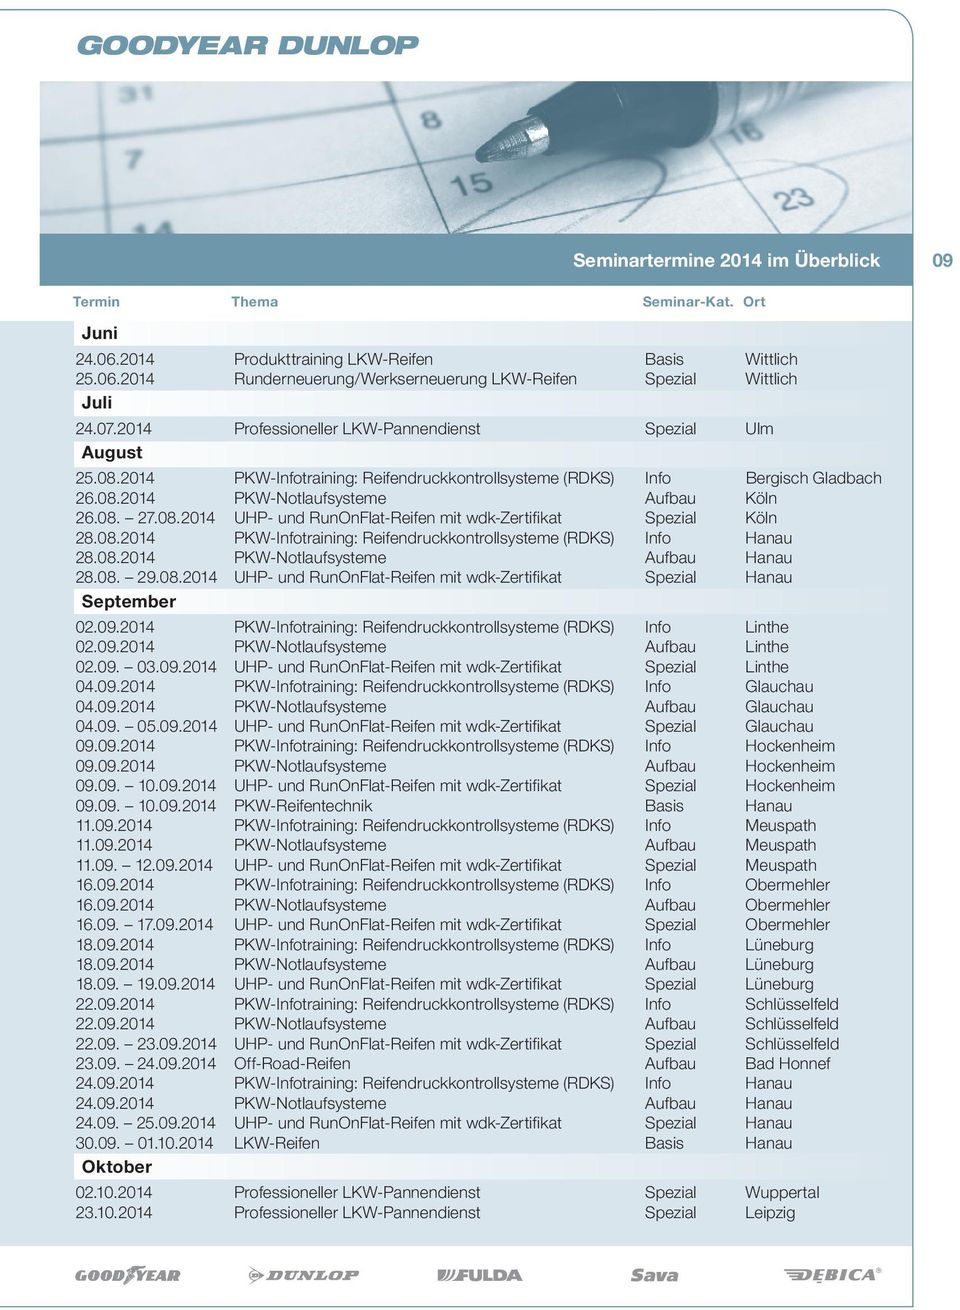 08.2014 UHP- und RunOnFlat-Reifen mit wdk-zertifikat Spezial Köln 28.08.2014 PKW-Infotraining: Reifendruckkontrollsysteme (RDKS) Info Hanau 28.08.2014 PKW-Notlaufsysteme Aufbau Hanau 28.08. 29.08.2014 UHP- und RunOnFlat-Reifen mit wdk-zertifikat Spezial Hanau September 02.